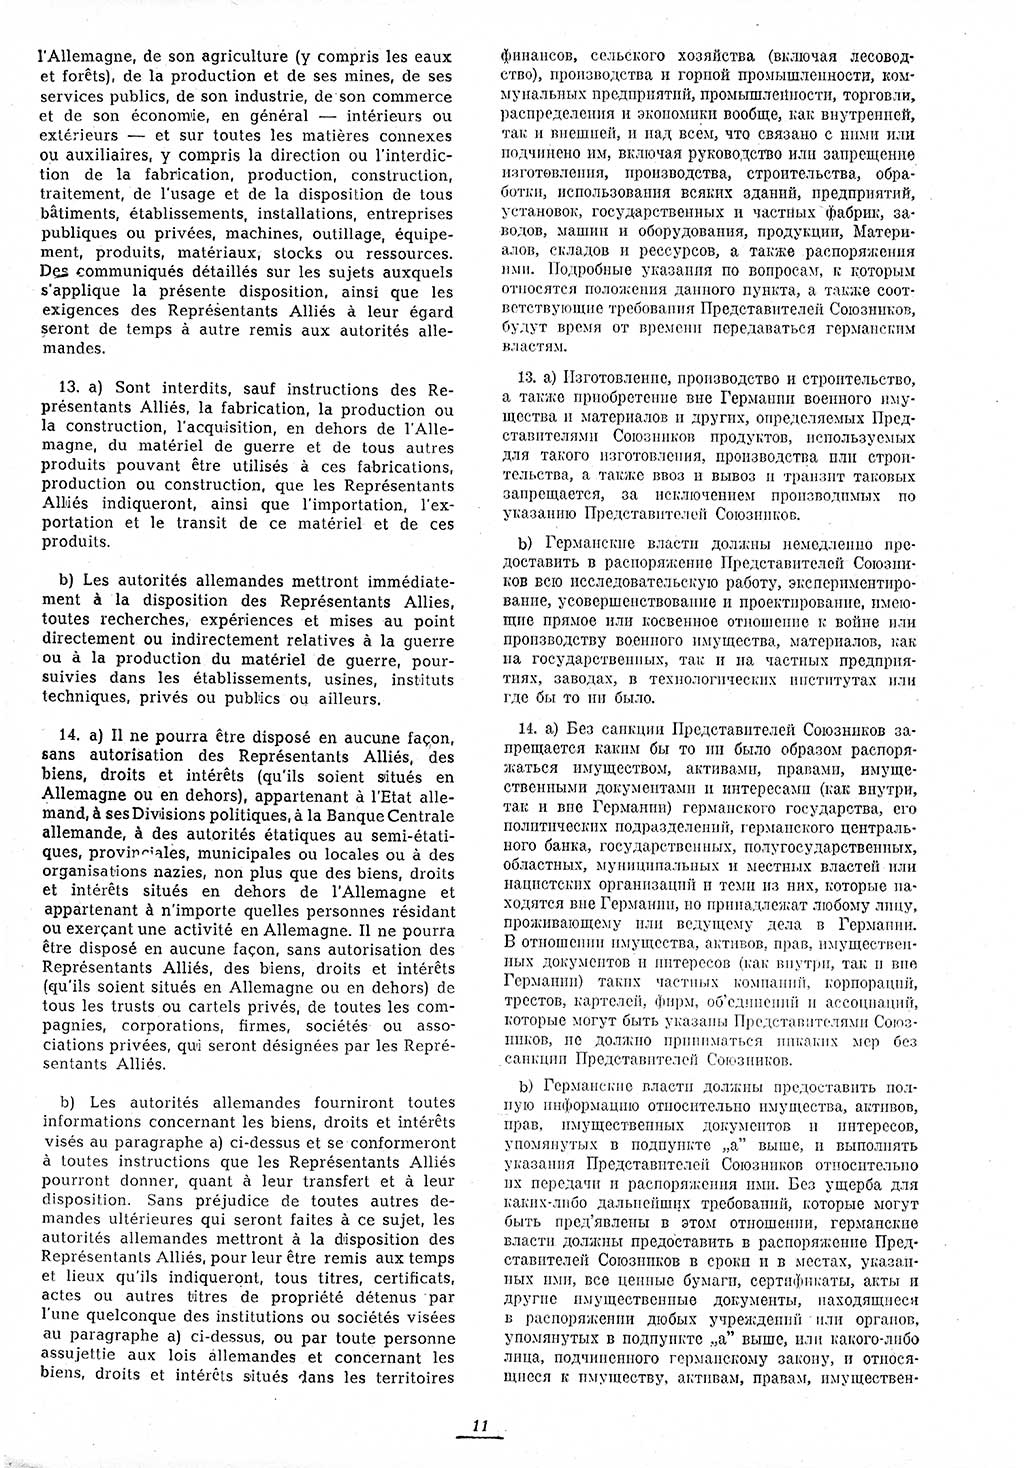 Amtsblatt des Kontrollrats (ABlKR) in Deutschland 1945, Seite 11/1 (ABlKR Dtl. 1945, S. 11/1)